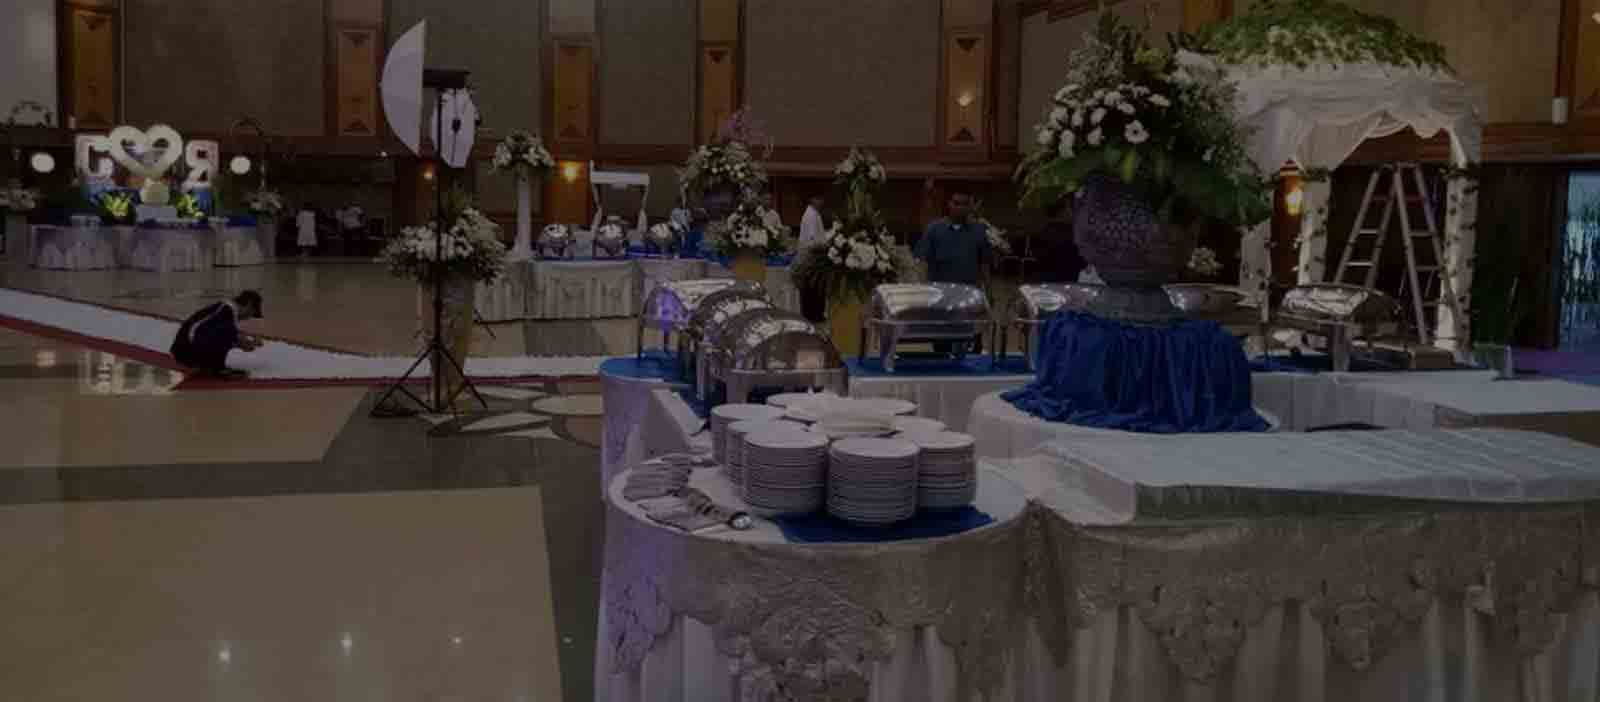 Catering Pernikahan Murah di Jakarta.